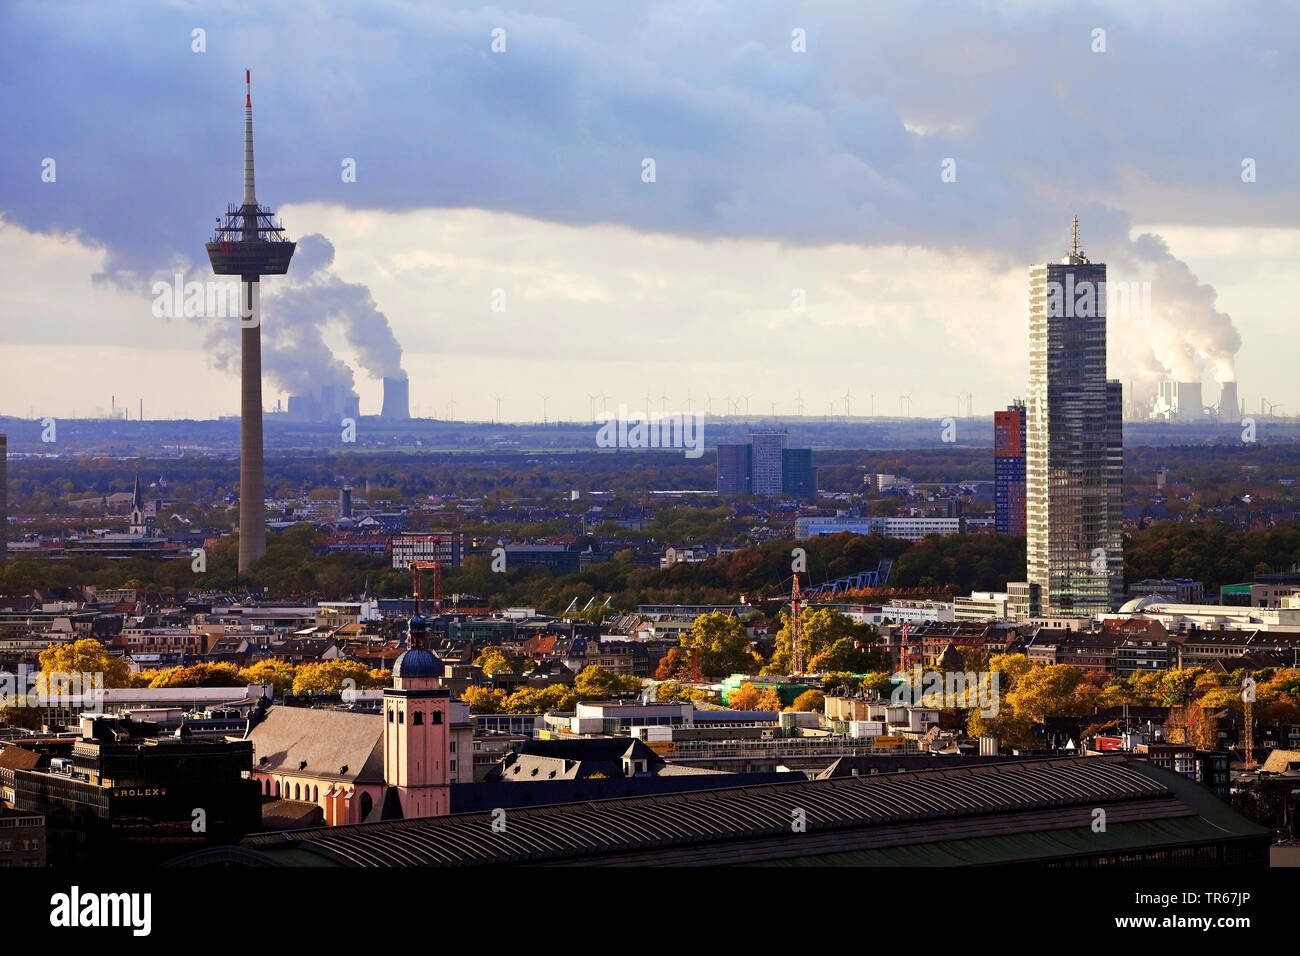 Vista della città con la torre della televisione e Koelnturm, carbone fossile bruno centrali in background, Germania, nella Renania settentrionale-Vestfalia e nella Renania, Colonia Foto Stock